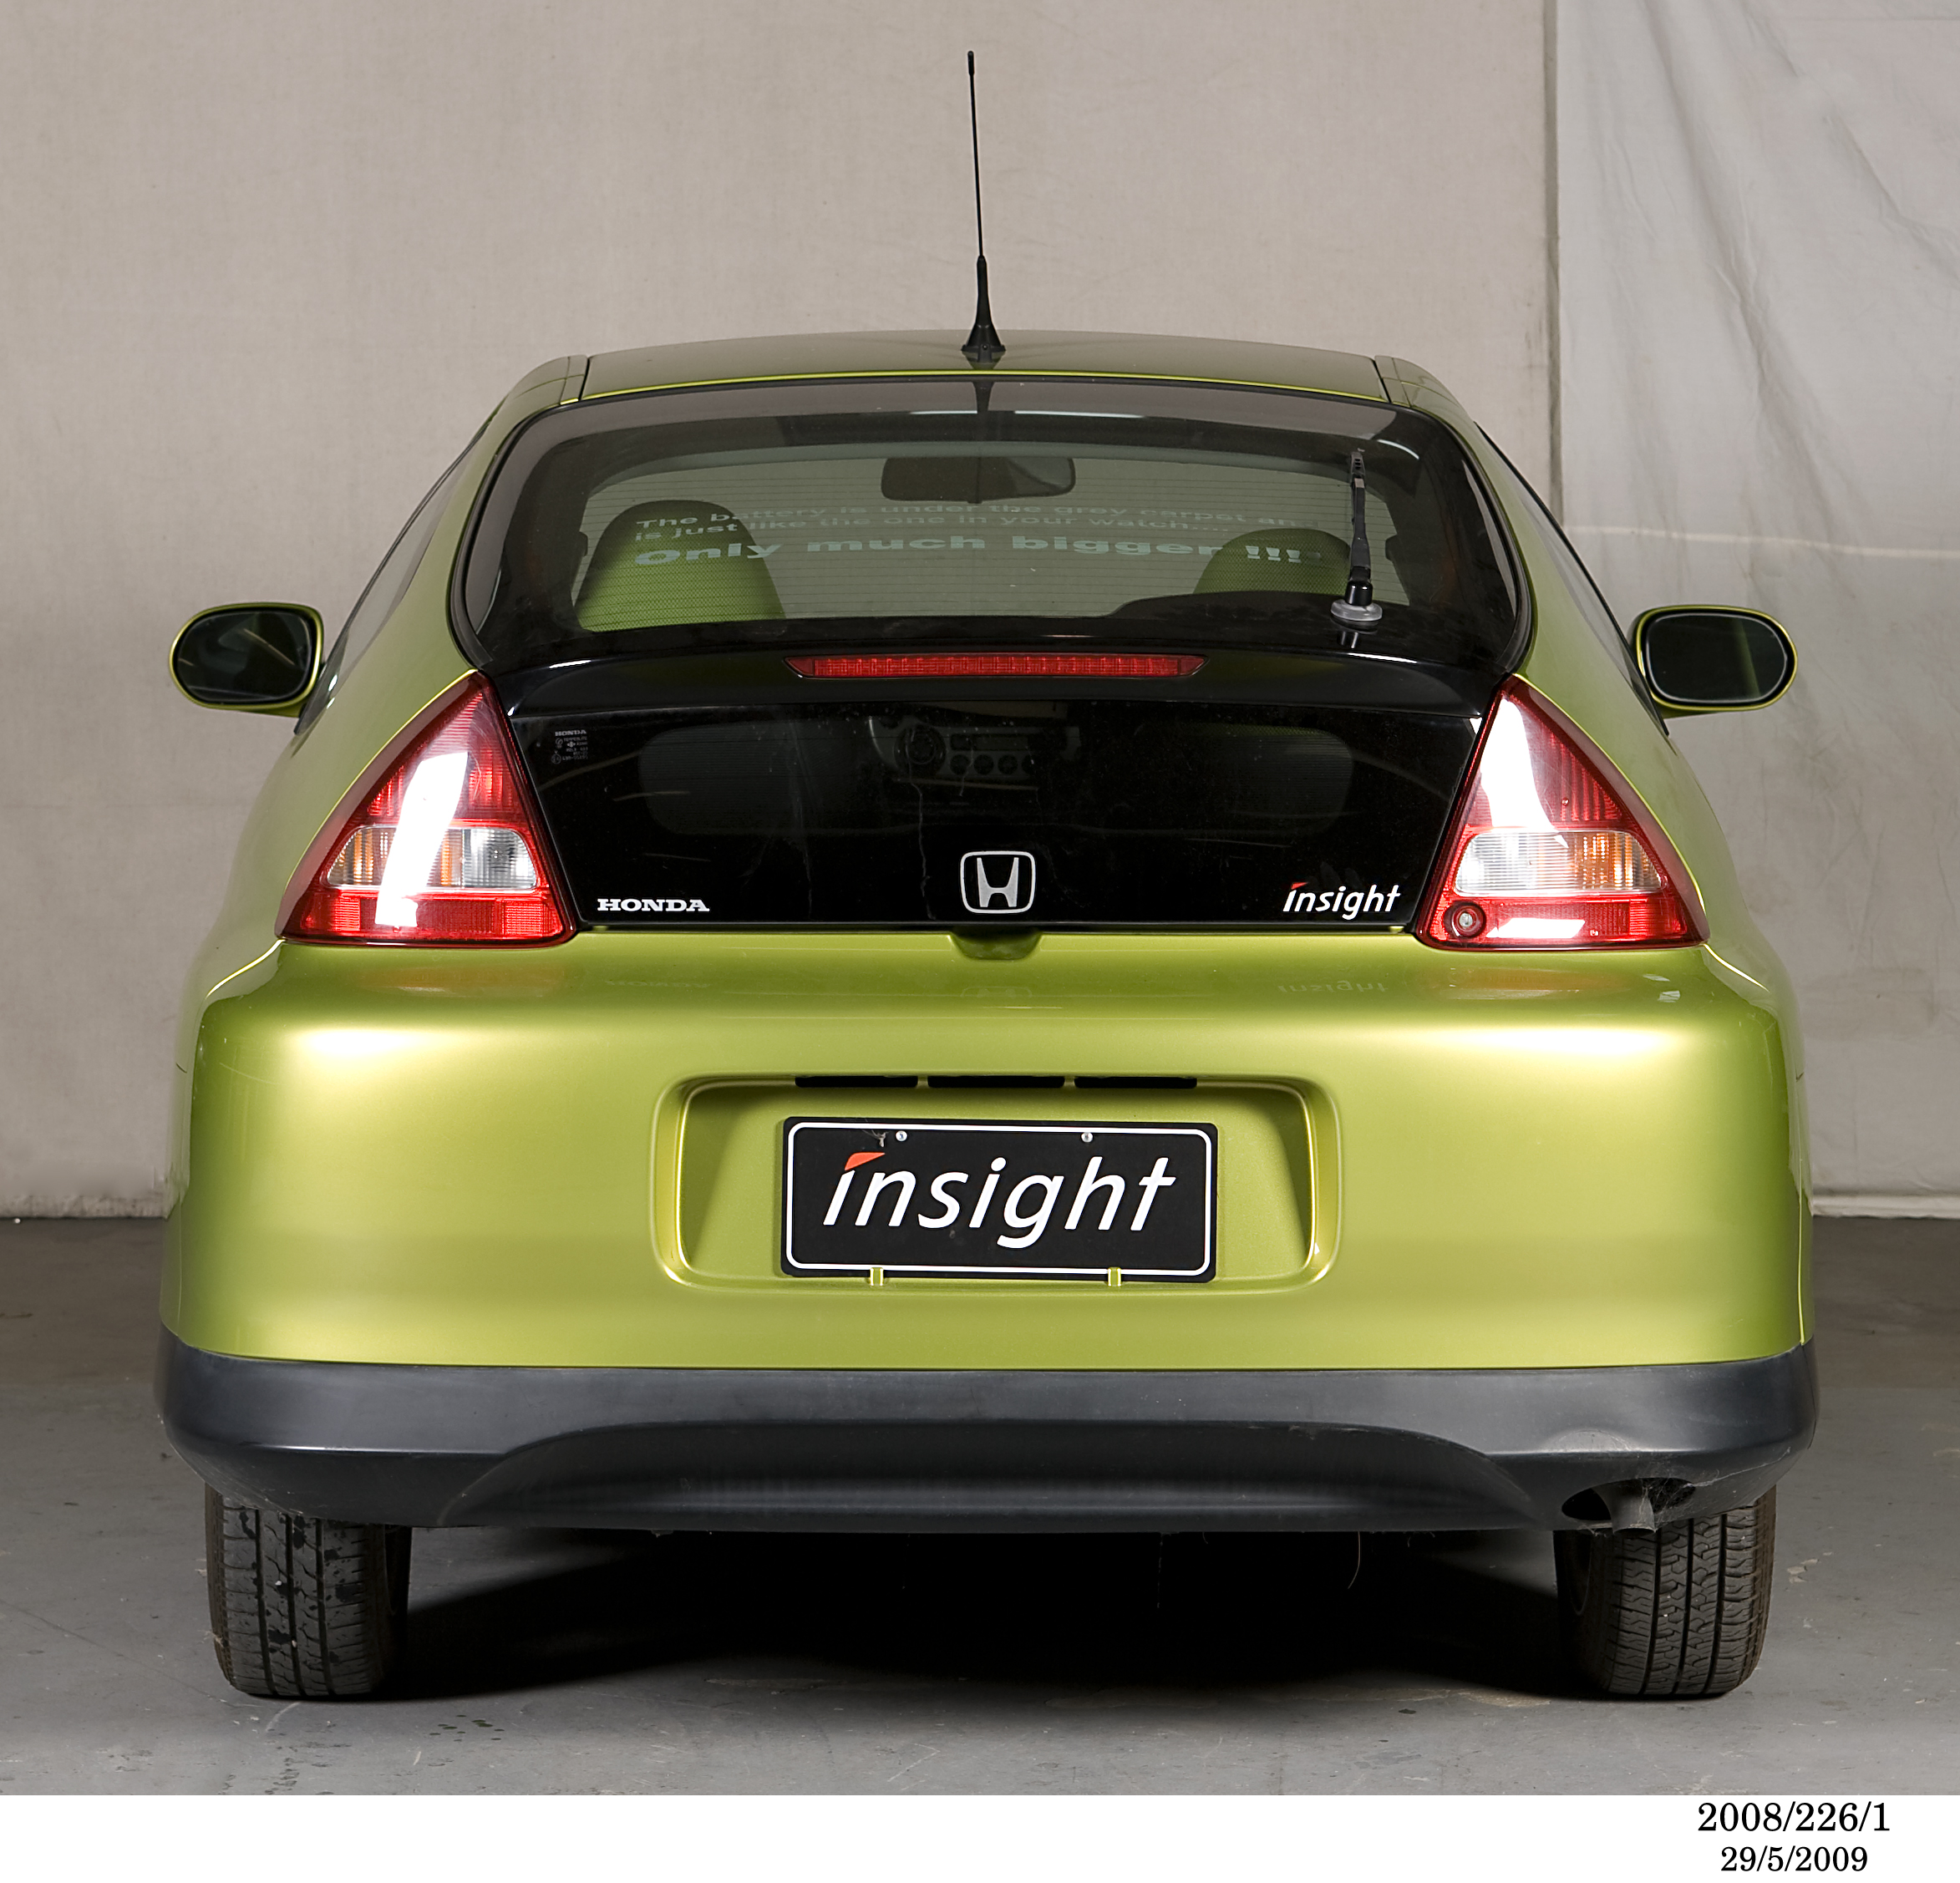 Honda Insight motor car